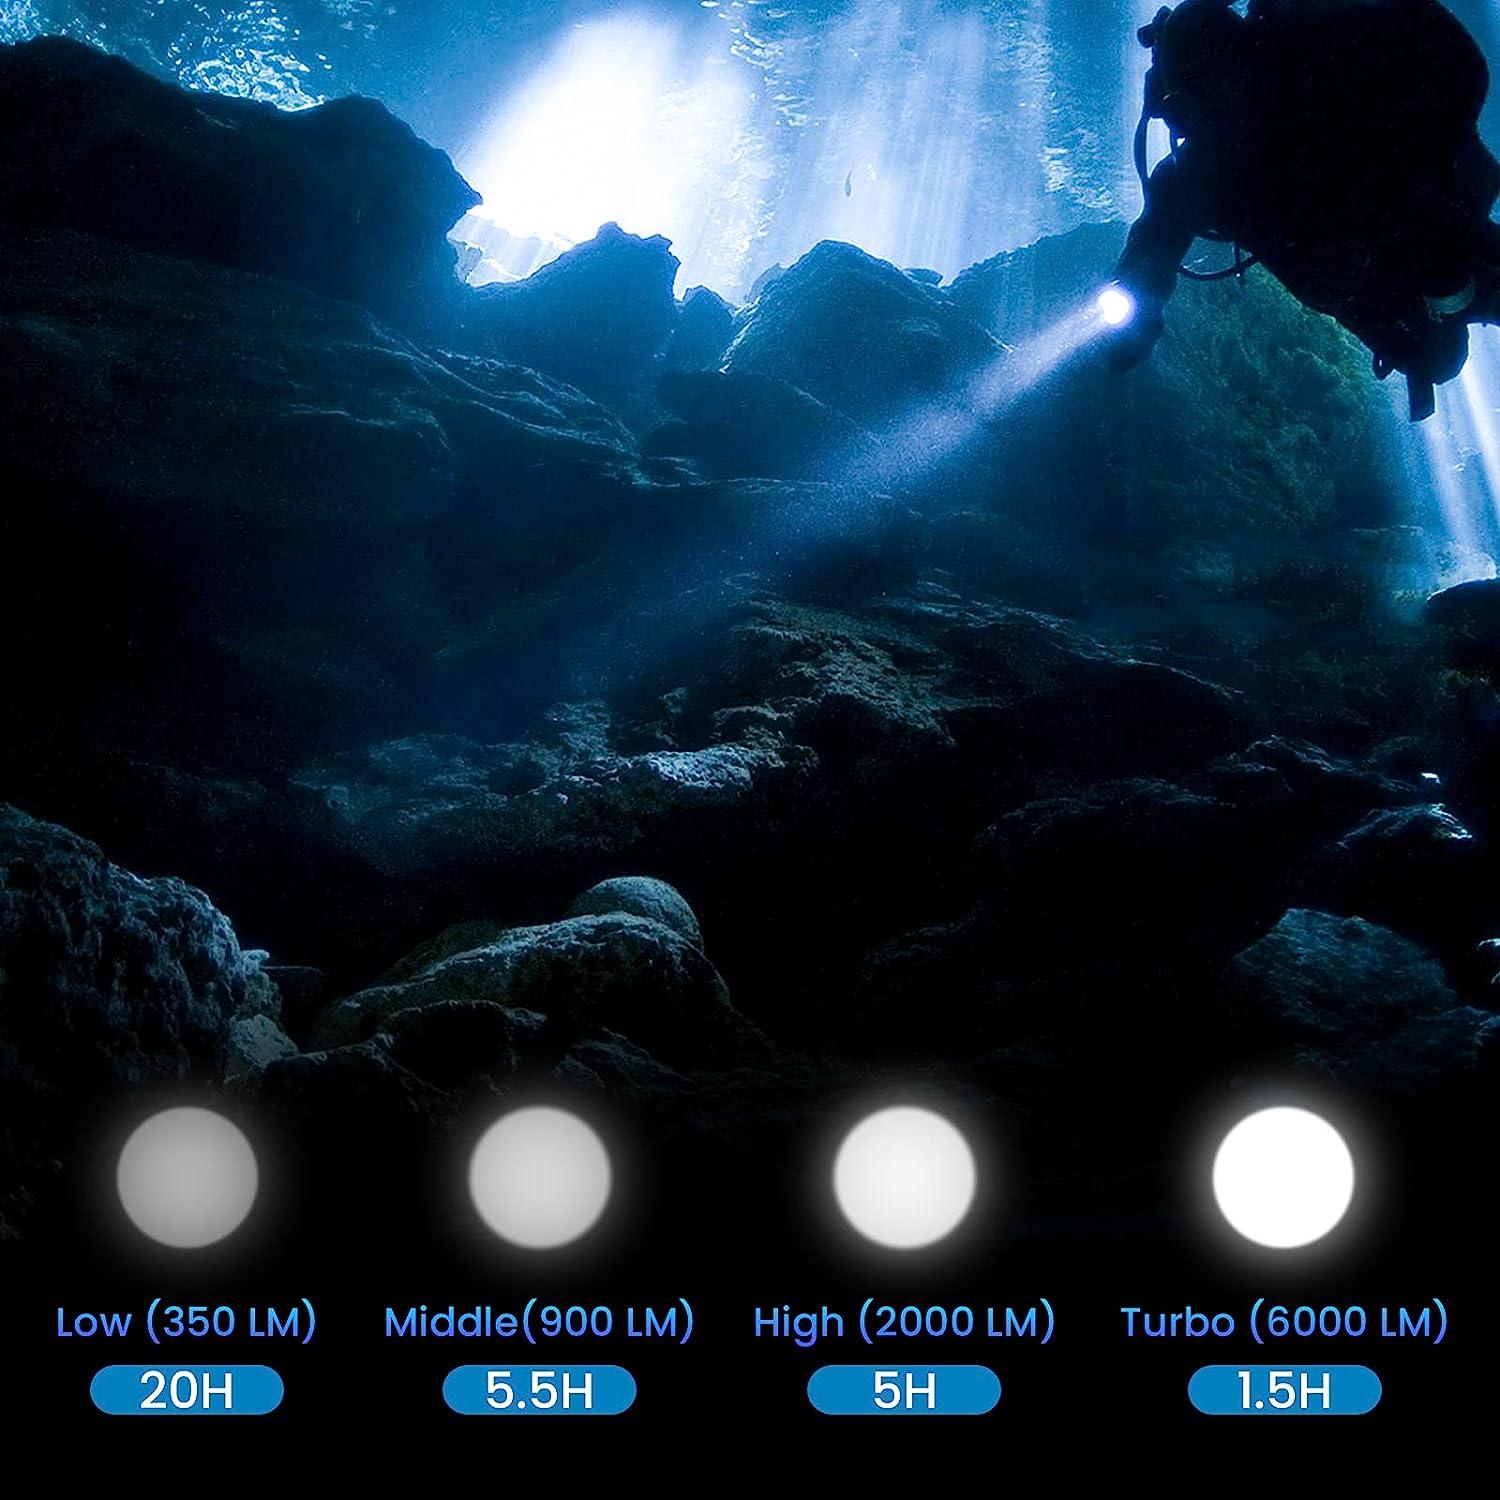 Sirius Survival LED 6000 lumens Flashlights